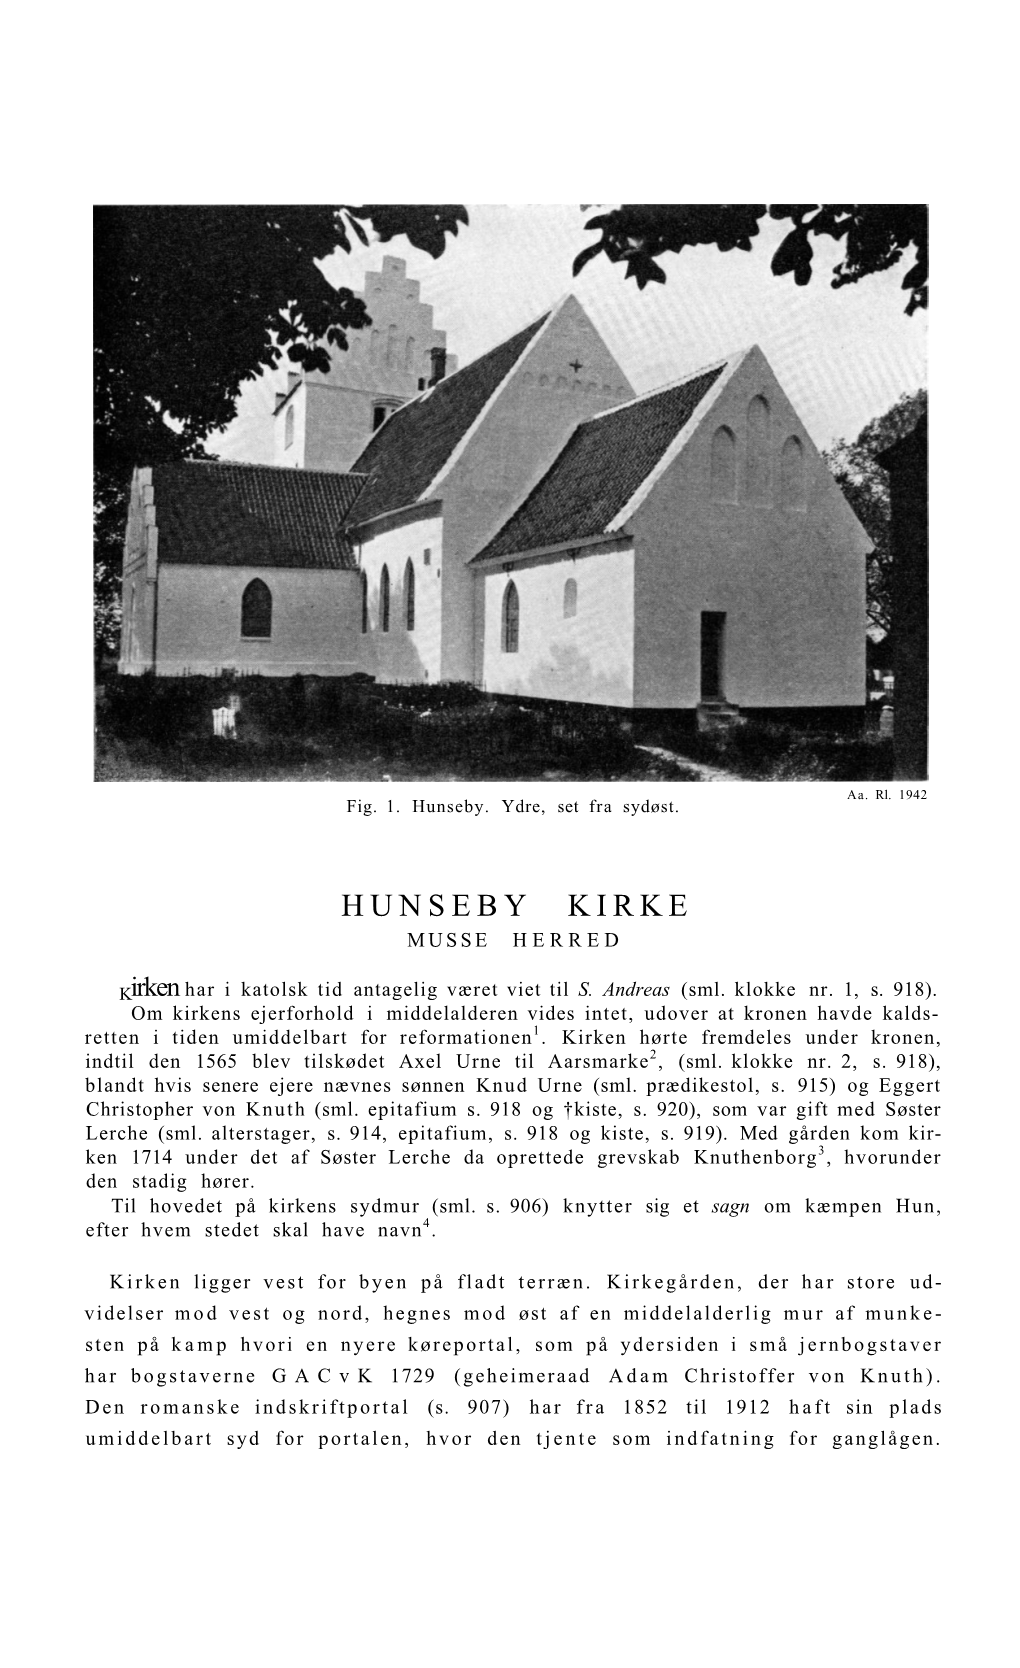 Hunseby Kirke Musse Herred